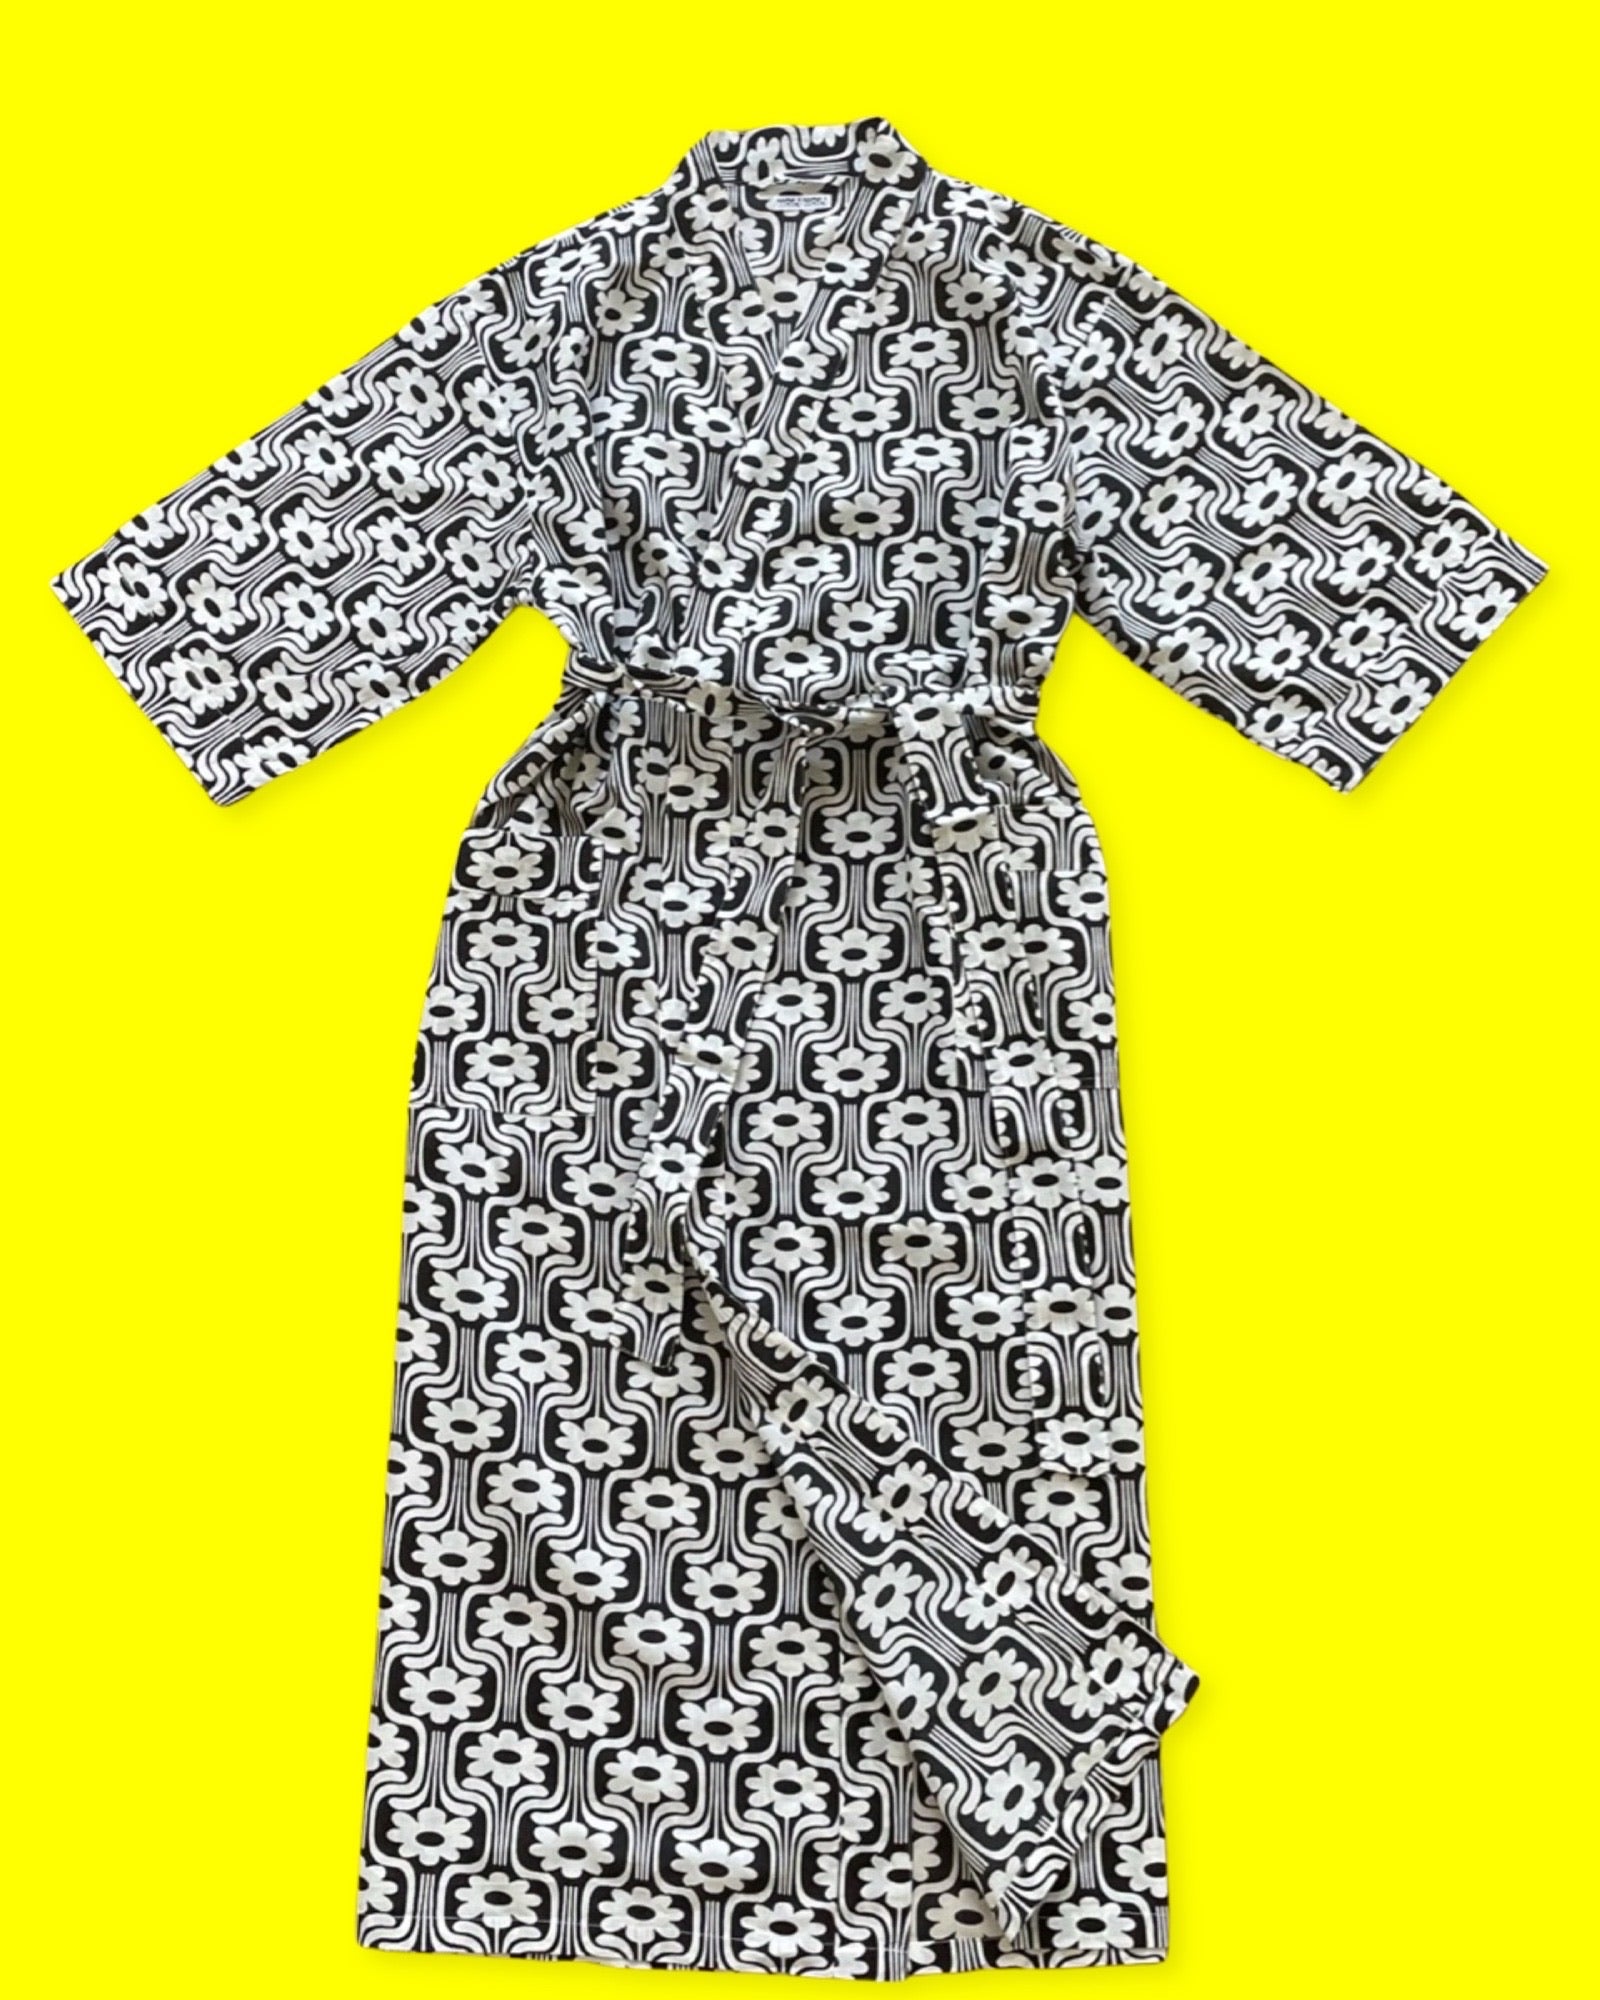 Notre sortie de lit est un kimono long à manches mi-longues, avec deux poches et fermée par une ceinture, le tout en coton fin à imprimé rétro à fleurs blanches sur fond noir. La photo la présente sur un fond jaune. 